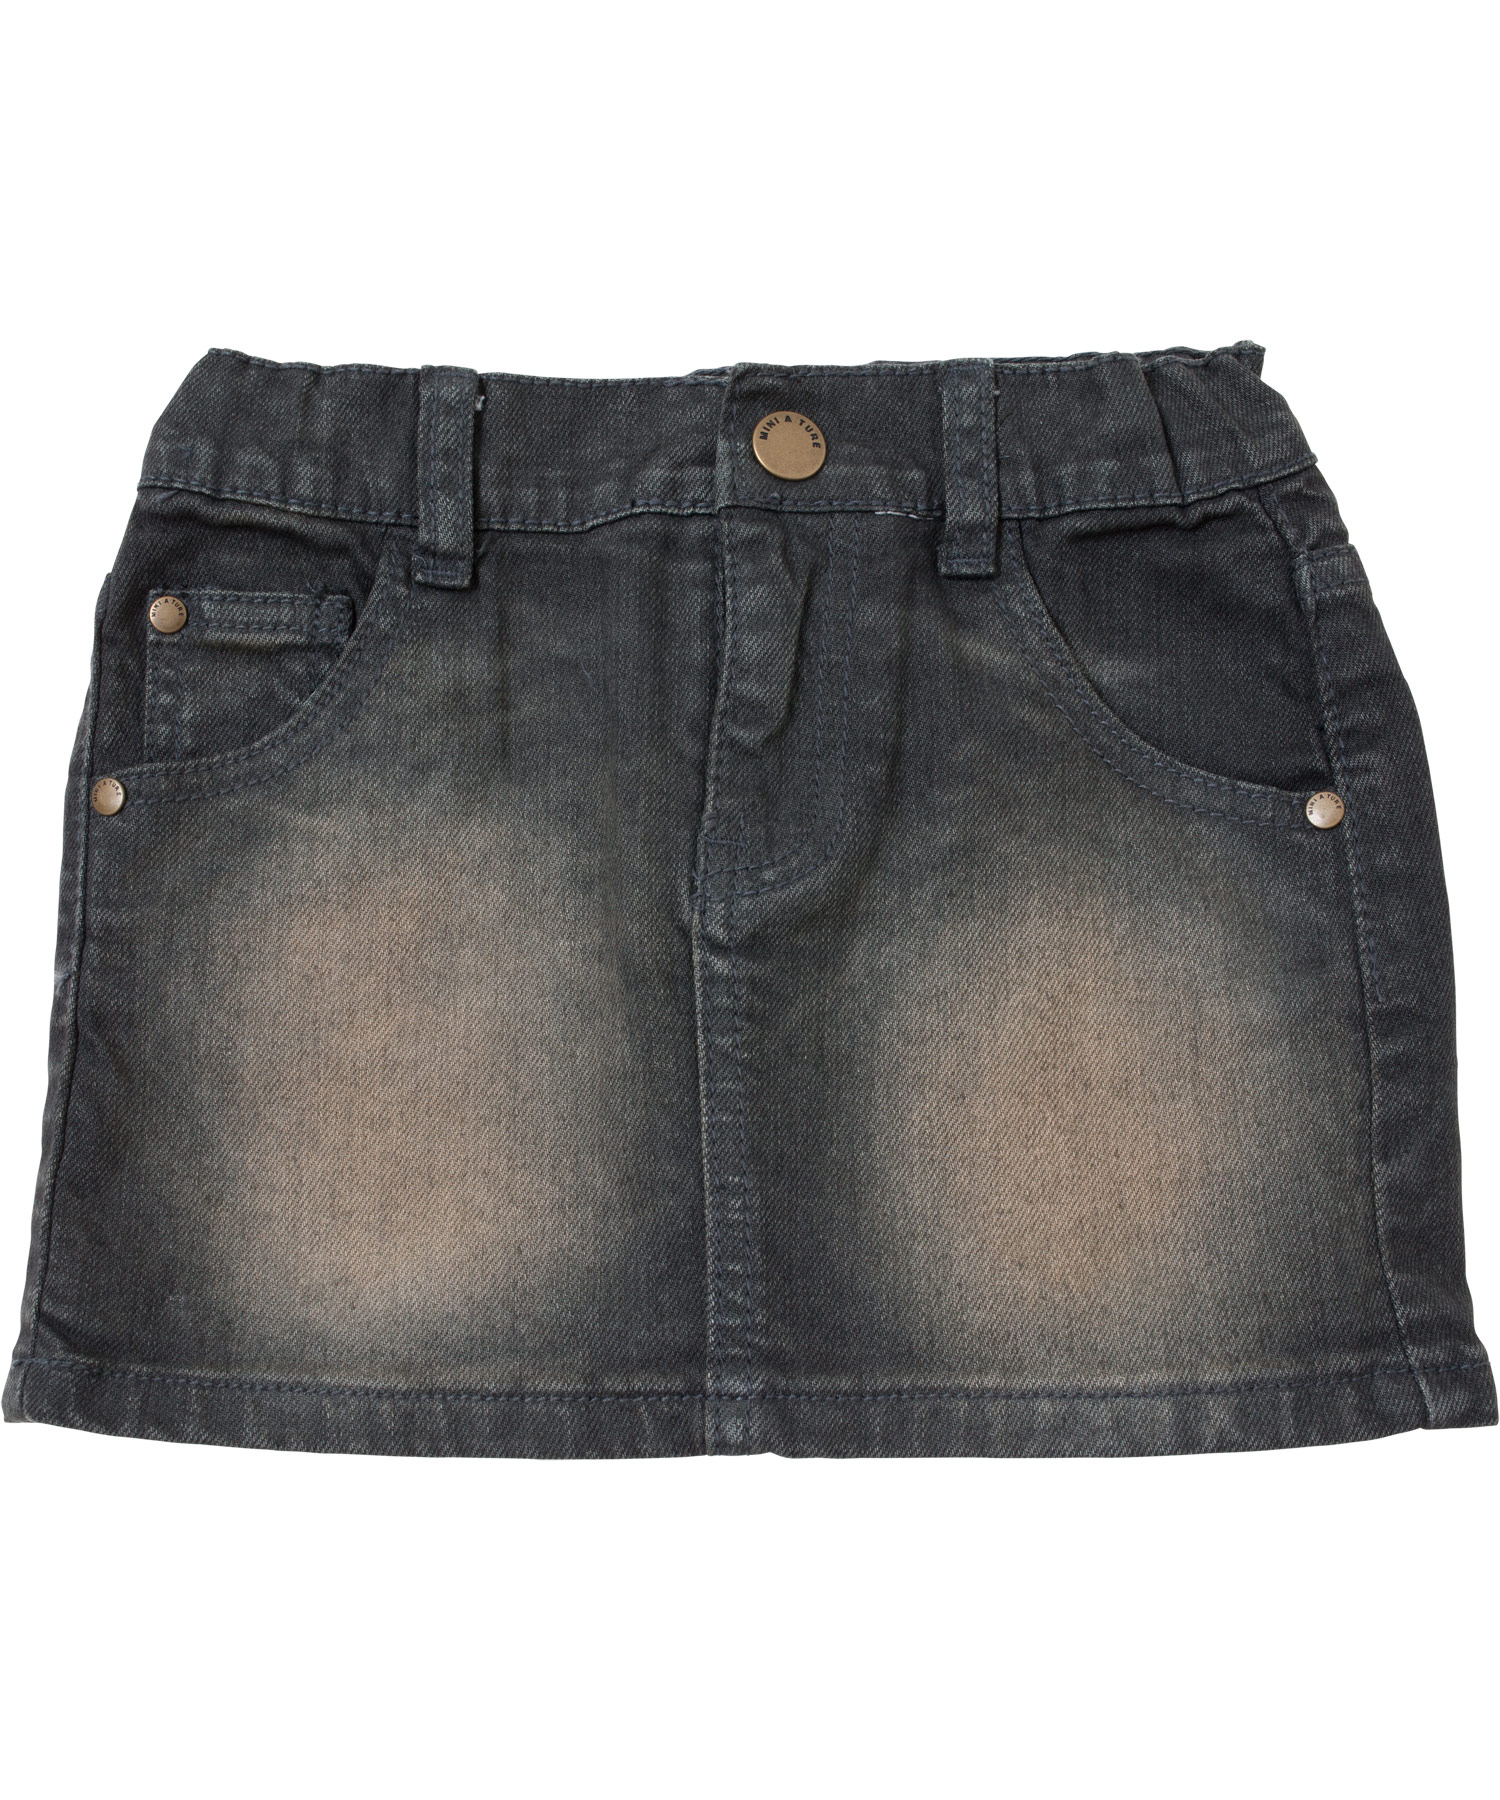 Bargain! Mini A Ture adorable dark grey jeans mini-skirt (Noma)